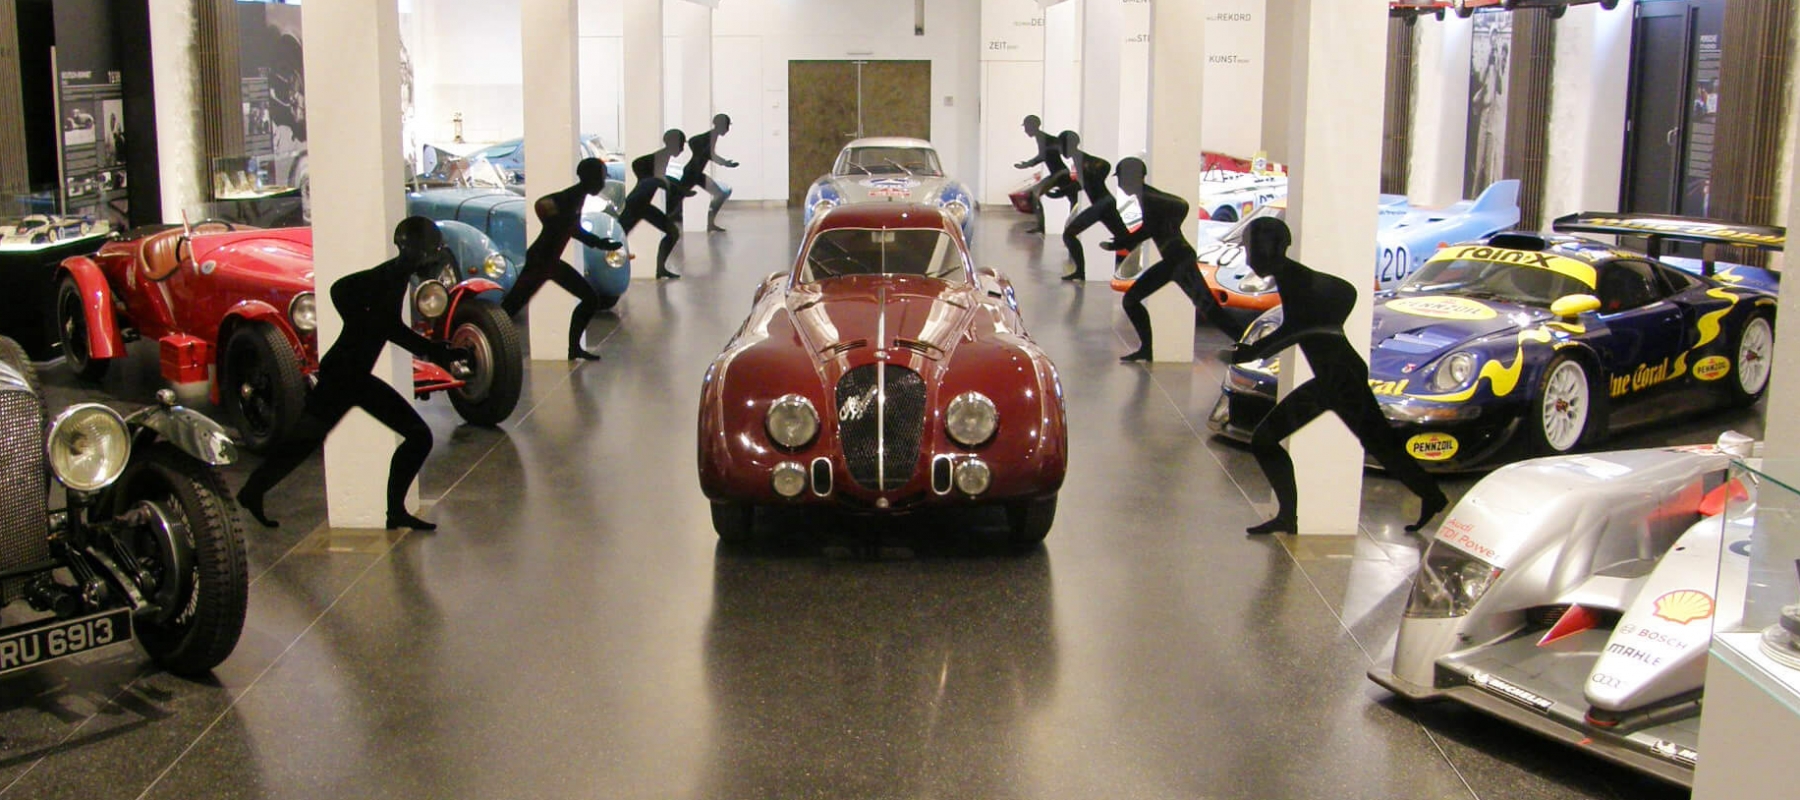 Das Hamburger Automuseum Prototyp präsentierte 2009/2010 in seiner Sonderausstellung 